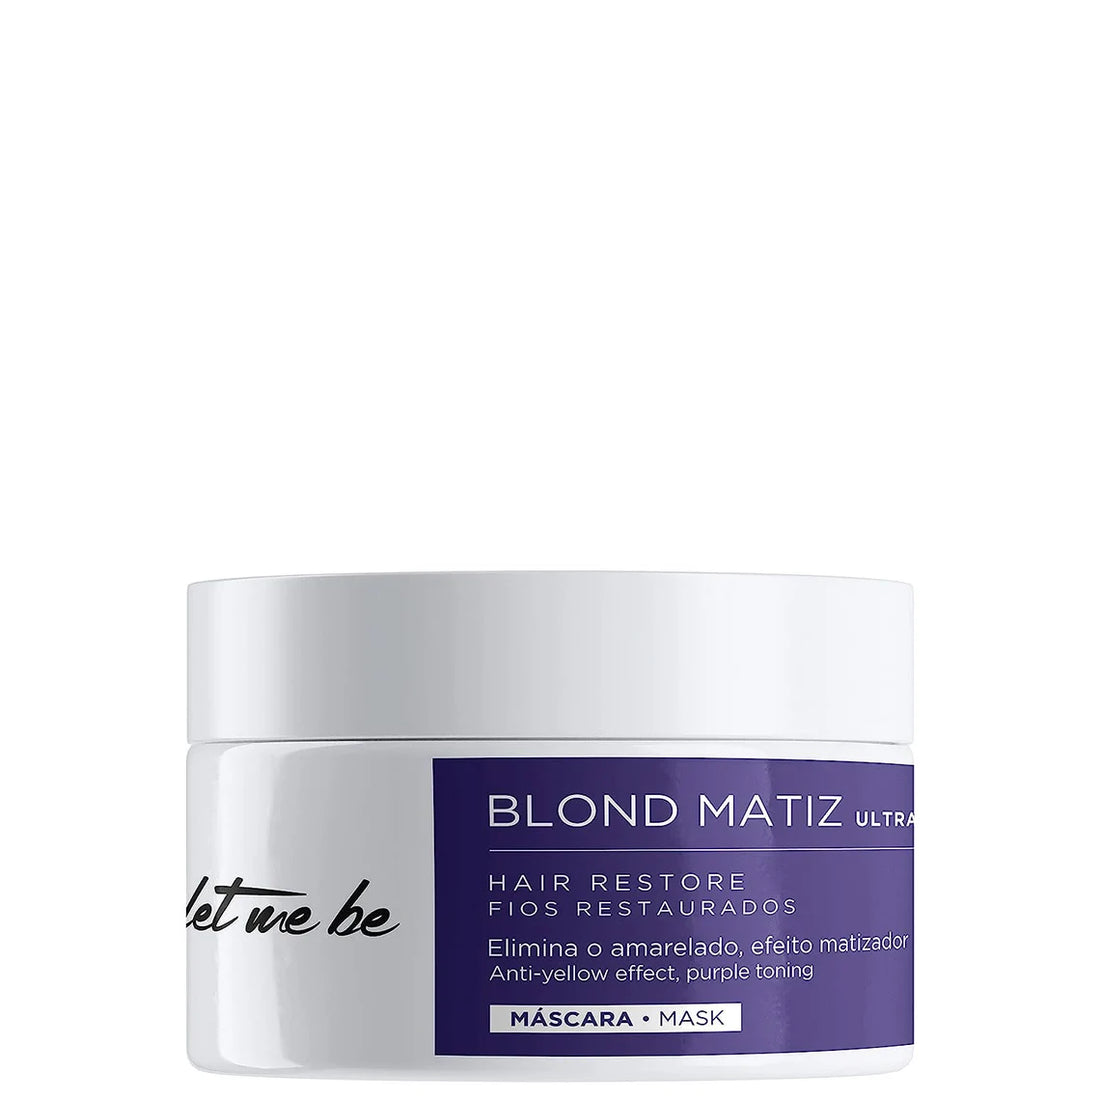 Let me be, Blond Matiz Ultra, Hair Mask For Hair, 250g